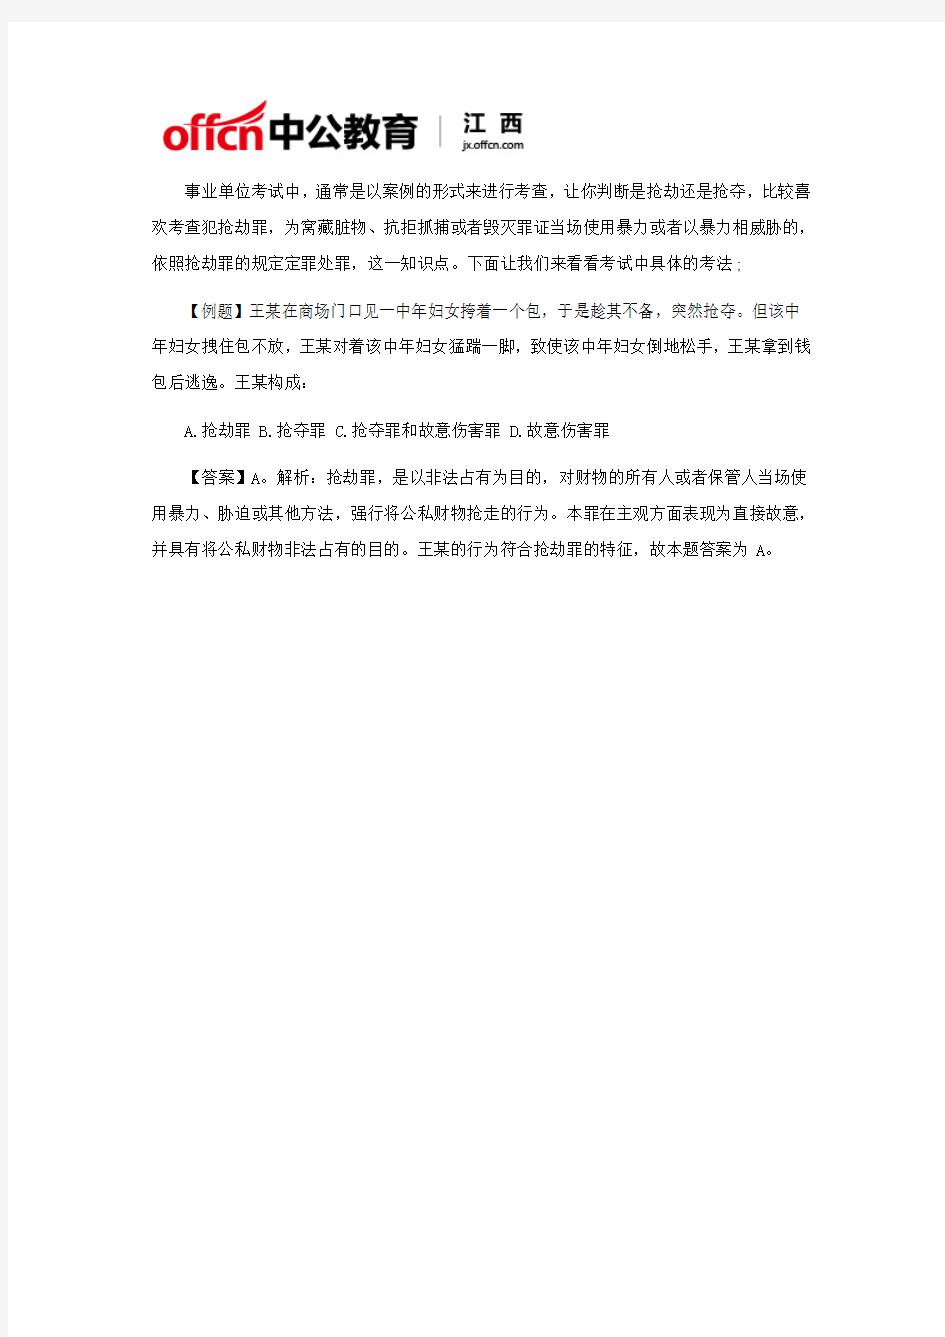 2018年江西省考招警考试公共基础知识——抢劫罪与抢夺罪